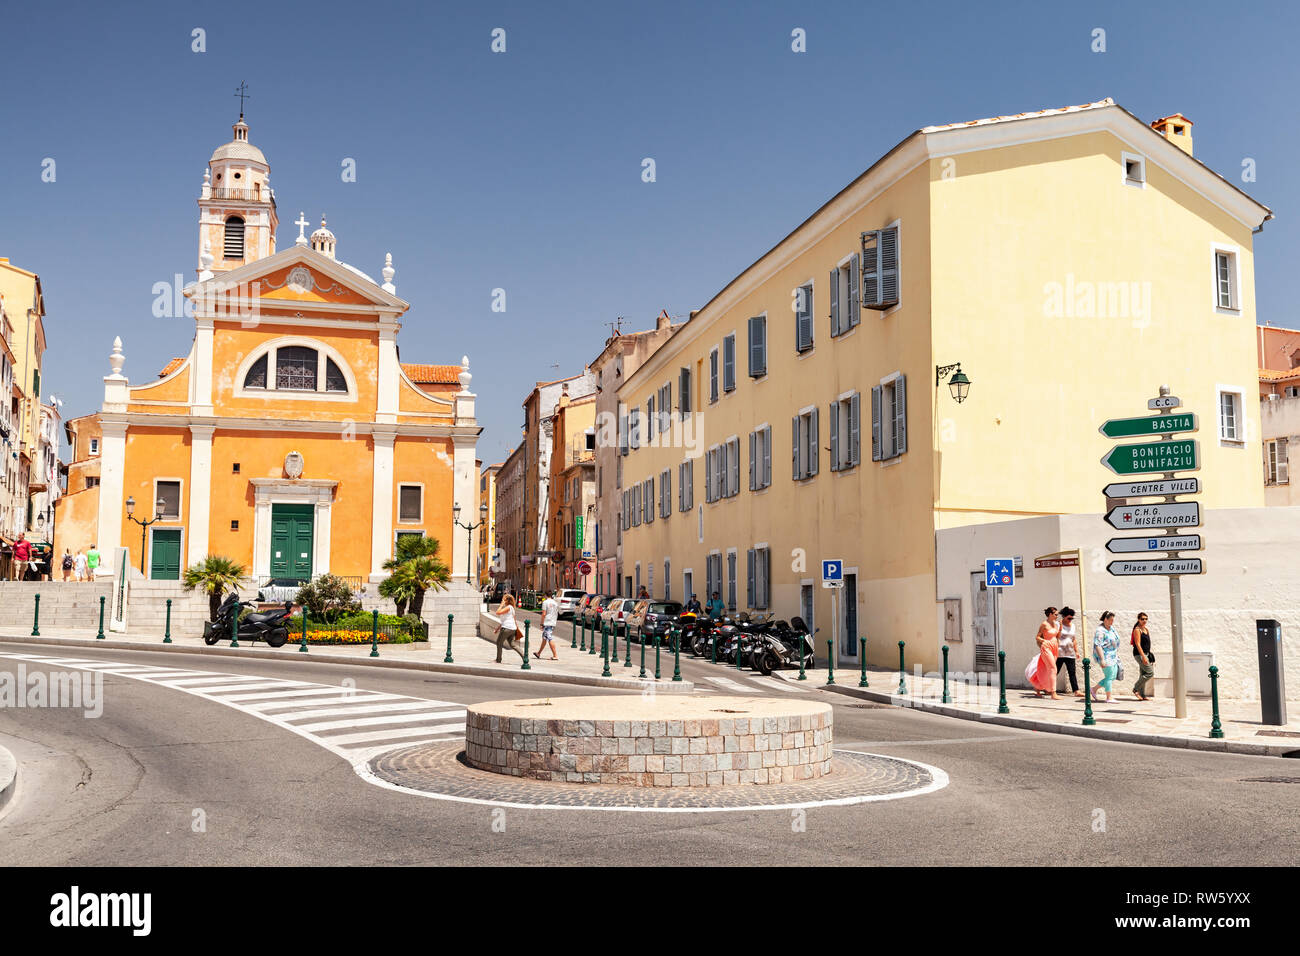 Ajaccio, Frankreich - Juli 6, 2015: Street View von Ajaccio mit der Kathedrale Unserer Lieben Frau von der Himmelfahrt. Gewöhnliche Menschen gehen auf die Straße Stockfoto